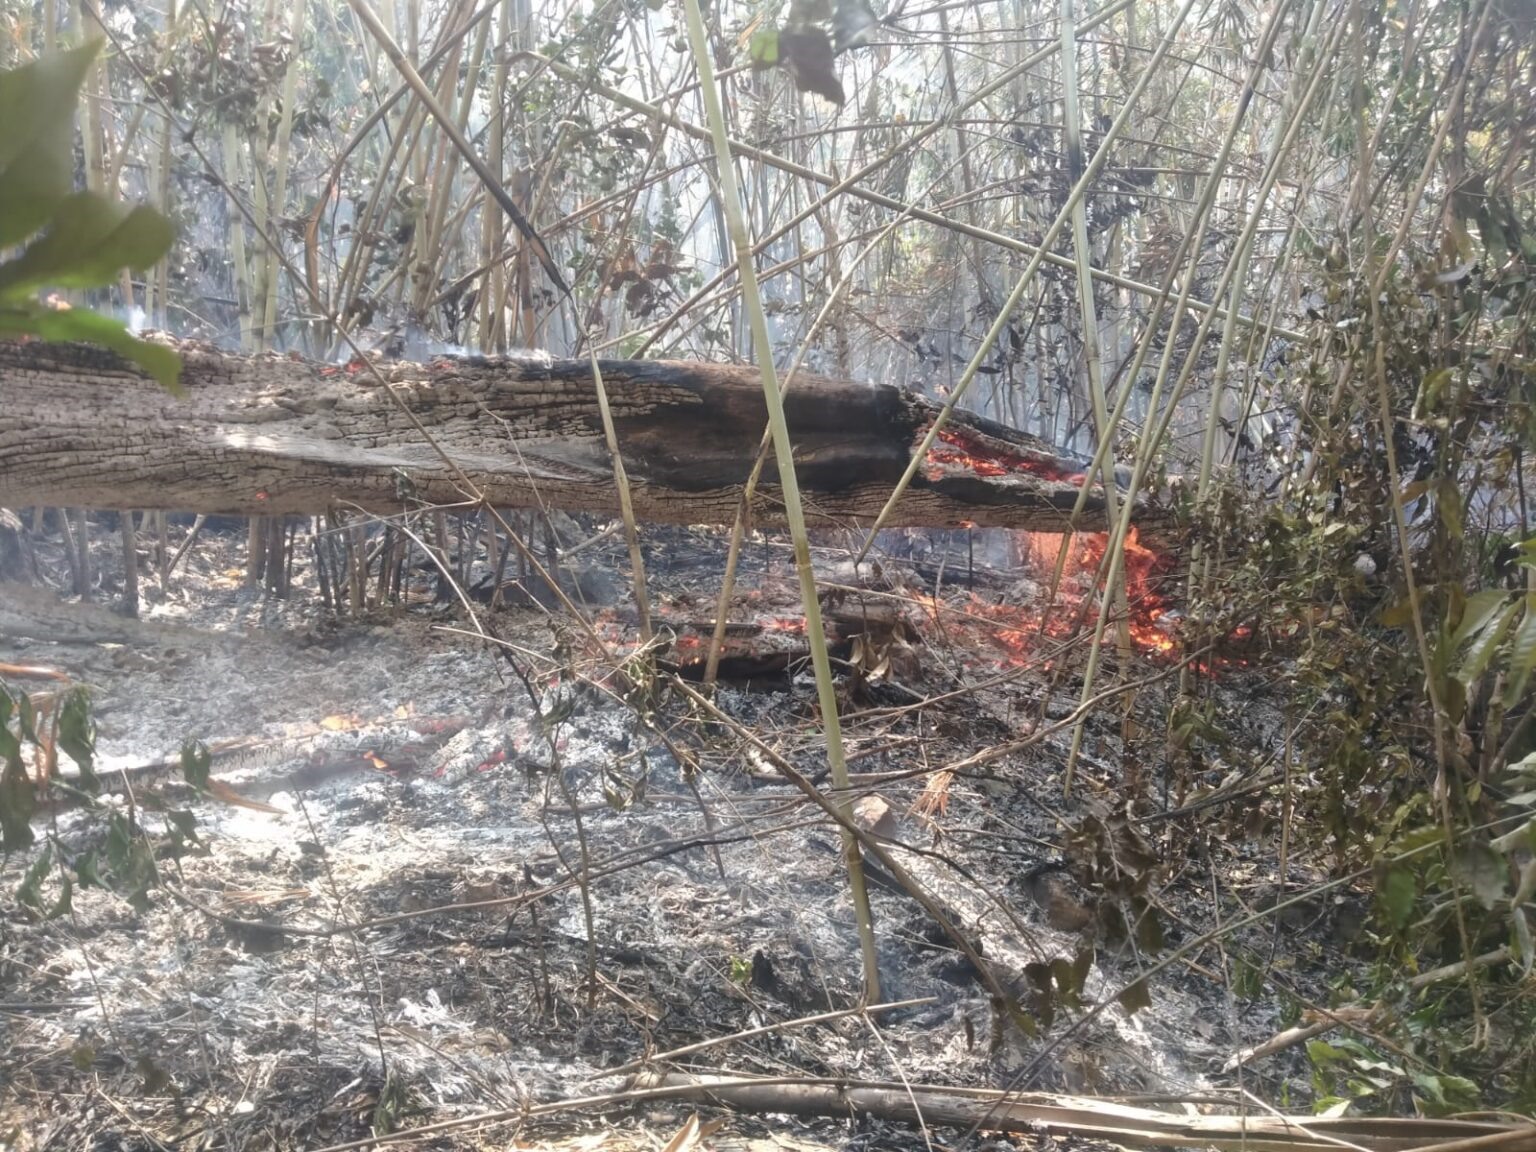 Theo báo cáo, cháy rừng đang xảy ra ngoài tầm kiểm soát trên hàng trăm ha đất ở nhiều vùng khác nhau của Lào, nhà chức trách phải nỗ lực kiểm soát để hạn chế thiệt hại trong bối cảnh thời tiết nắng nóng tiếp tục diễn ra.  Hiện tại, các nhà chức trách lo ngại rằng các đám cháy, với nguyên nhân chủ yếu là do người nông dân đốt rẫy để chuẩn bị gieo trồng có thể trở nên tồi tệ hơn do thiếu thiết bị chữa cháy.  Hơn 400 binh sĩ, tình nguyện viên cứu hộ khẩn cấp và người dân địa phương đã hợp tác kiểm soát đám cháy rừng tại núi Phou Khao Khuay ở quận Pakngum, Vientiane, ước tính có ít nhất 300 ha đất bị ảnh hưởng.  Huyện trưởng Pakngum, ông Kongmy Sisamout, cho biết chính quyền đã kêu gọi thêm các thiết bị cần thiết để giúp dập tắt đám cháy. Các nỗ lực đang tập trung vào việc ngăn chặn ngọn lửa lan đến các điểm tham quan du lịch gần đó như Tad Tham Pha, Tad Vangluang Taleo và Nam Pien Yorlapa.  Trước đó vào năm 2018, huyện Pakngum cũng bị thiệt hại khoảng 200 ha đất trong một vụ cháy rừng. Các đám cháy rừng năm nay bùng phát vào tháng 1 và tháng 2 và đã được dập tắt bốn lần, nhưng một đám cháy khác lại bắt đầu vào tháng này.  Cũng liên quan đến vấn đề này, một đám cháy rừng ở huyện Sangthong đã diễn ra trong 7 ngày và nỗ lực dập tắt nó cho đến nay vẫn chưa thành công. Chính quyền địa phương đã điều động lực lượng cứu hỏa đến hỗ trợ dập lửa đang lan rộng tại khu vực vườn quốc gia Phou Phanang, hậu quả của các đám cháy được cho là nguyên nhân dẫn đến hiện tượng sương mù bụi ô nhiễm nghiêm trọng ở thành phố Vientiane trong nhiều ngày qua.  Tại tỉnh Luang Prabang, nhà chức trách huyện Viengkham cũng đang huy động lực lượng để kiểm soát đám cháy rừng phòng hộ Phoukou, khu vực rừng quân sự và là khu bảo tồn rừng của huyện Viengkham.  Trong bối cảnh thời tiết khô và nóng, với nhiệt độ lên tới 39-40 độ C, cháy rừng và hoả hoạn và một trong các rủi ro hàng đầu ở nhiều địa phương ở Lào. Tuần trước, hai người ở Lào đã chết khi bị mắc kẹt trong bụi rậm cháy sau khi đốt lửa để dọn đất trồng lúa mà không có sự phối hợp tốt về thông tin.  Tình trạng cháy rừng gây ô nhiễm khiến nhà chức trách đã khuyến cáo người dân tránh các hoạt động ngoài trời và đeo khẩu trang khi ra ngoài.